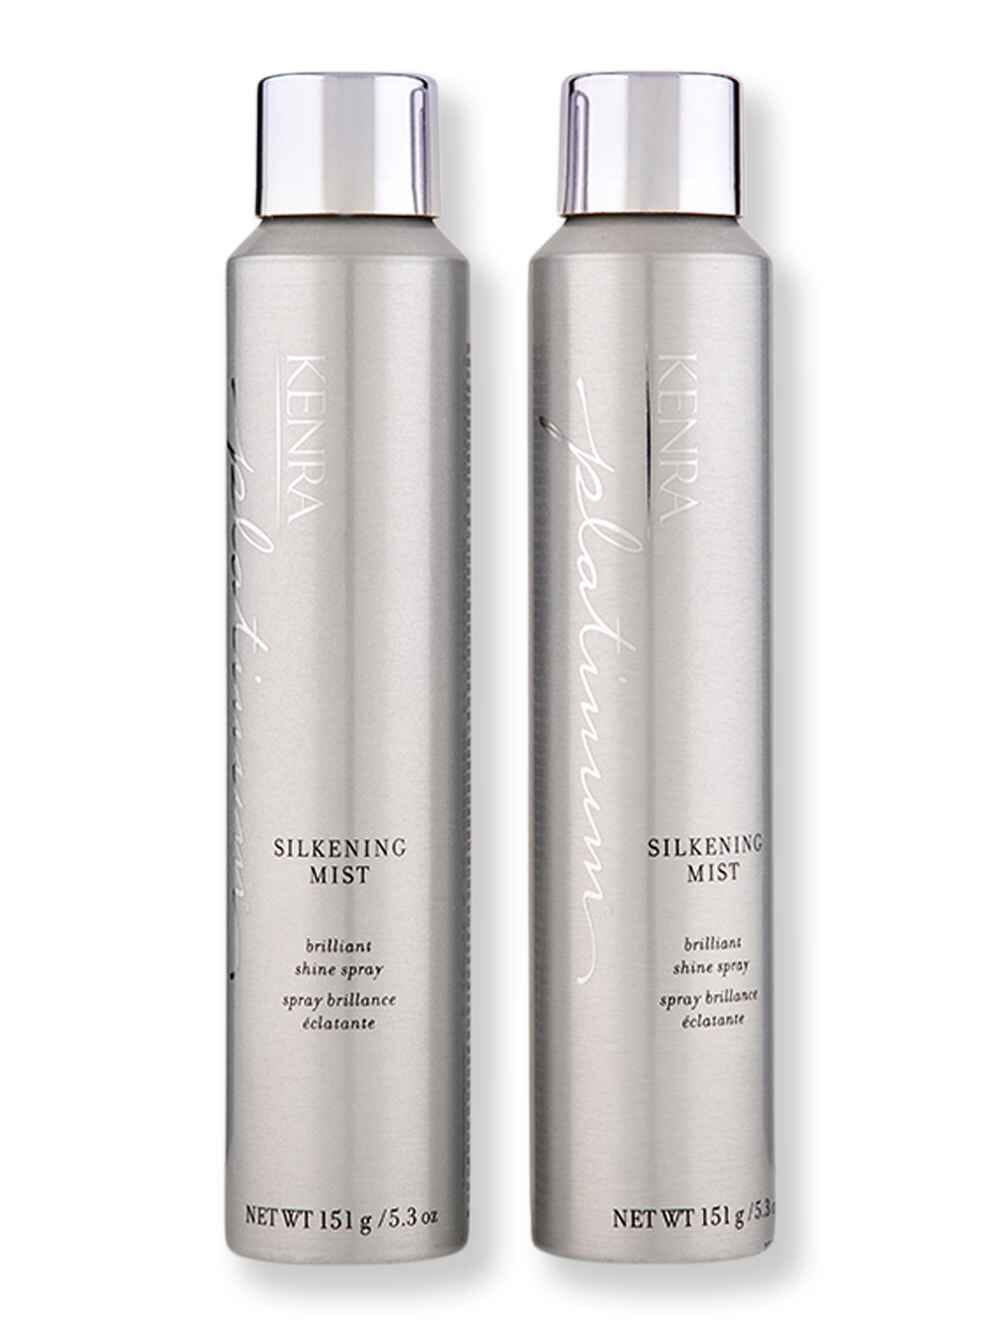 Kenra Kenra Platinum 55% Silkening Mist 2 Ct 5.3 oz Hair Sprays 